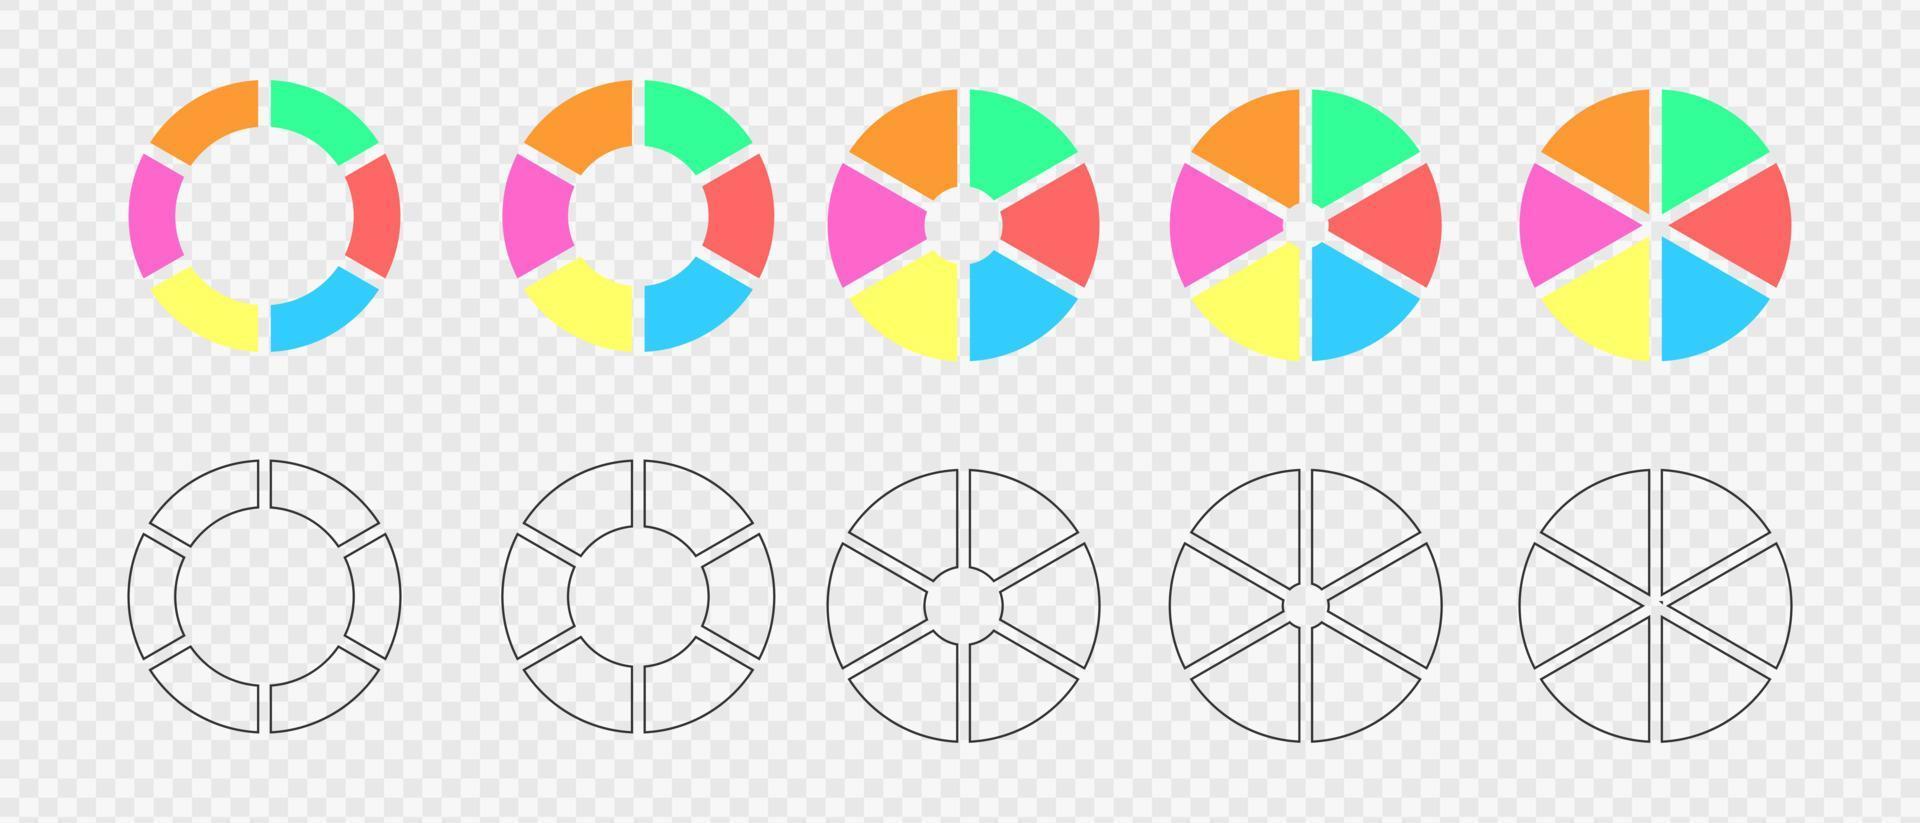 uppsättning av munk diagram segmenterad på 6 likvärdig delar. infographic hjul dividerat i sex färgad och grafisk sektioner. cirkel diagram eller läser in barer vektor